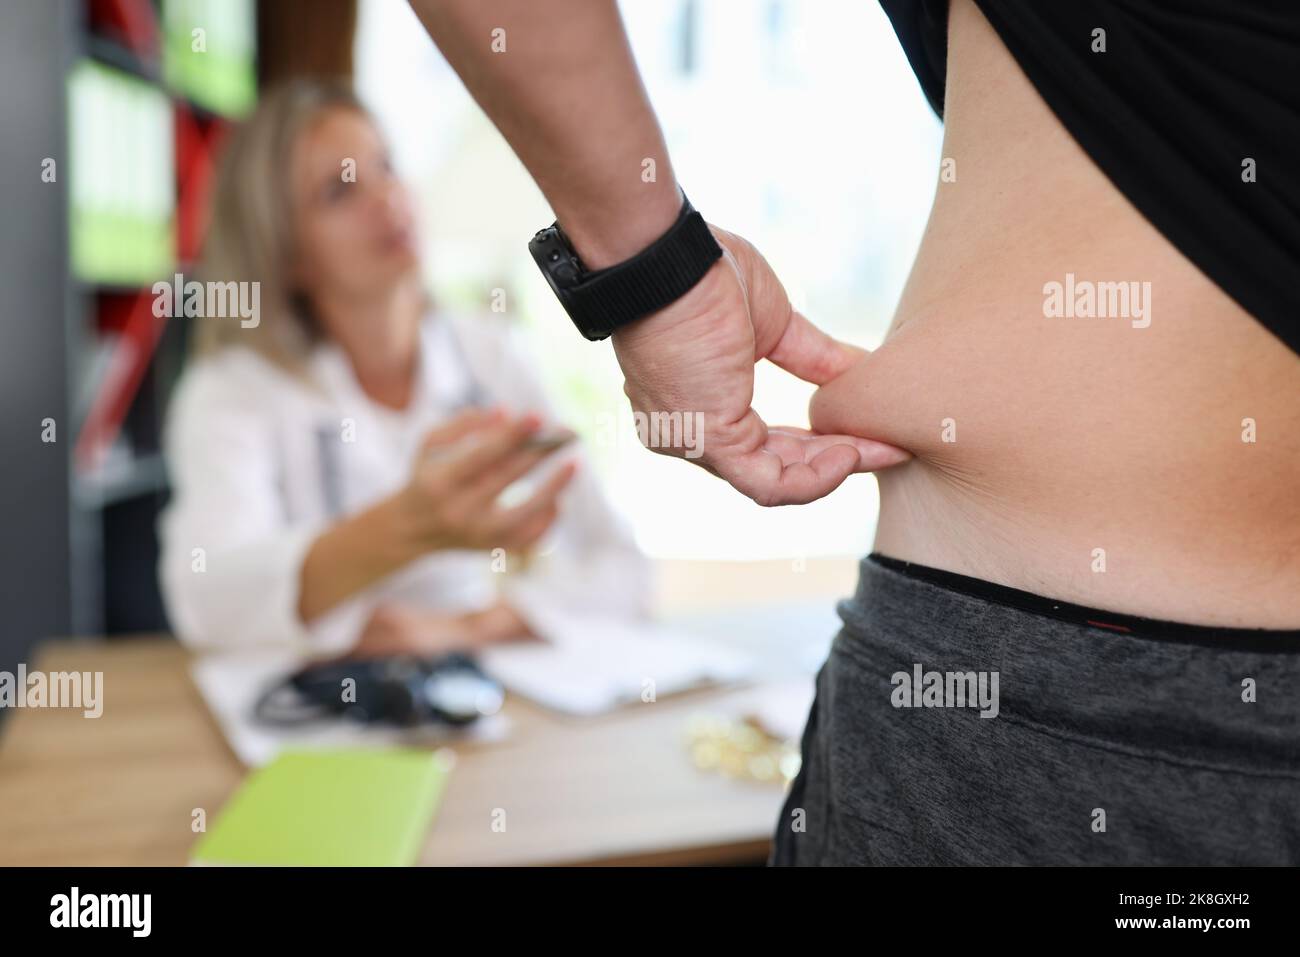 Uomo che tira la pelle sull'addome, mostrando il grasso corporeo nella zona addominale Foto Stock